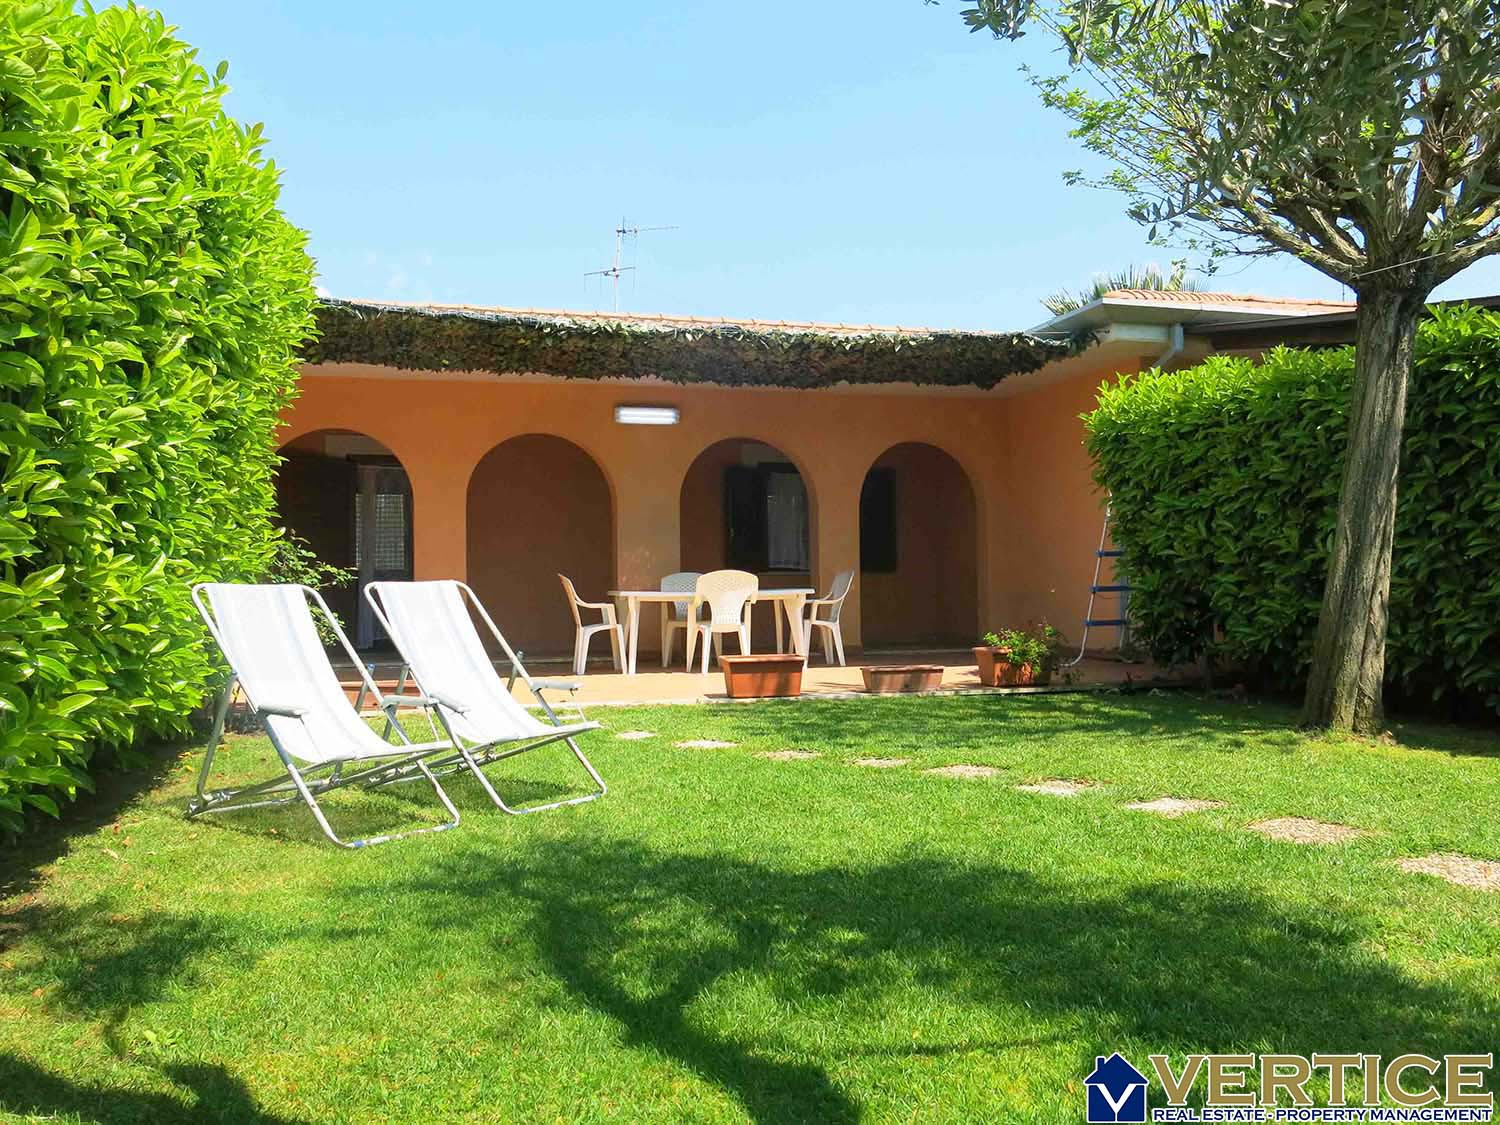 Villa in affitto a Fondi, 2 locali, zona Località: MarinadiFondi, Trattative riservate | CambioCasa.it